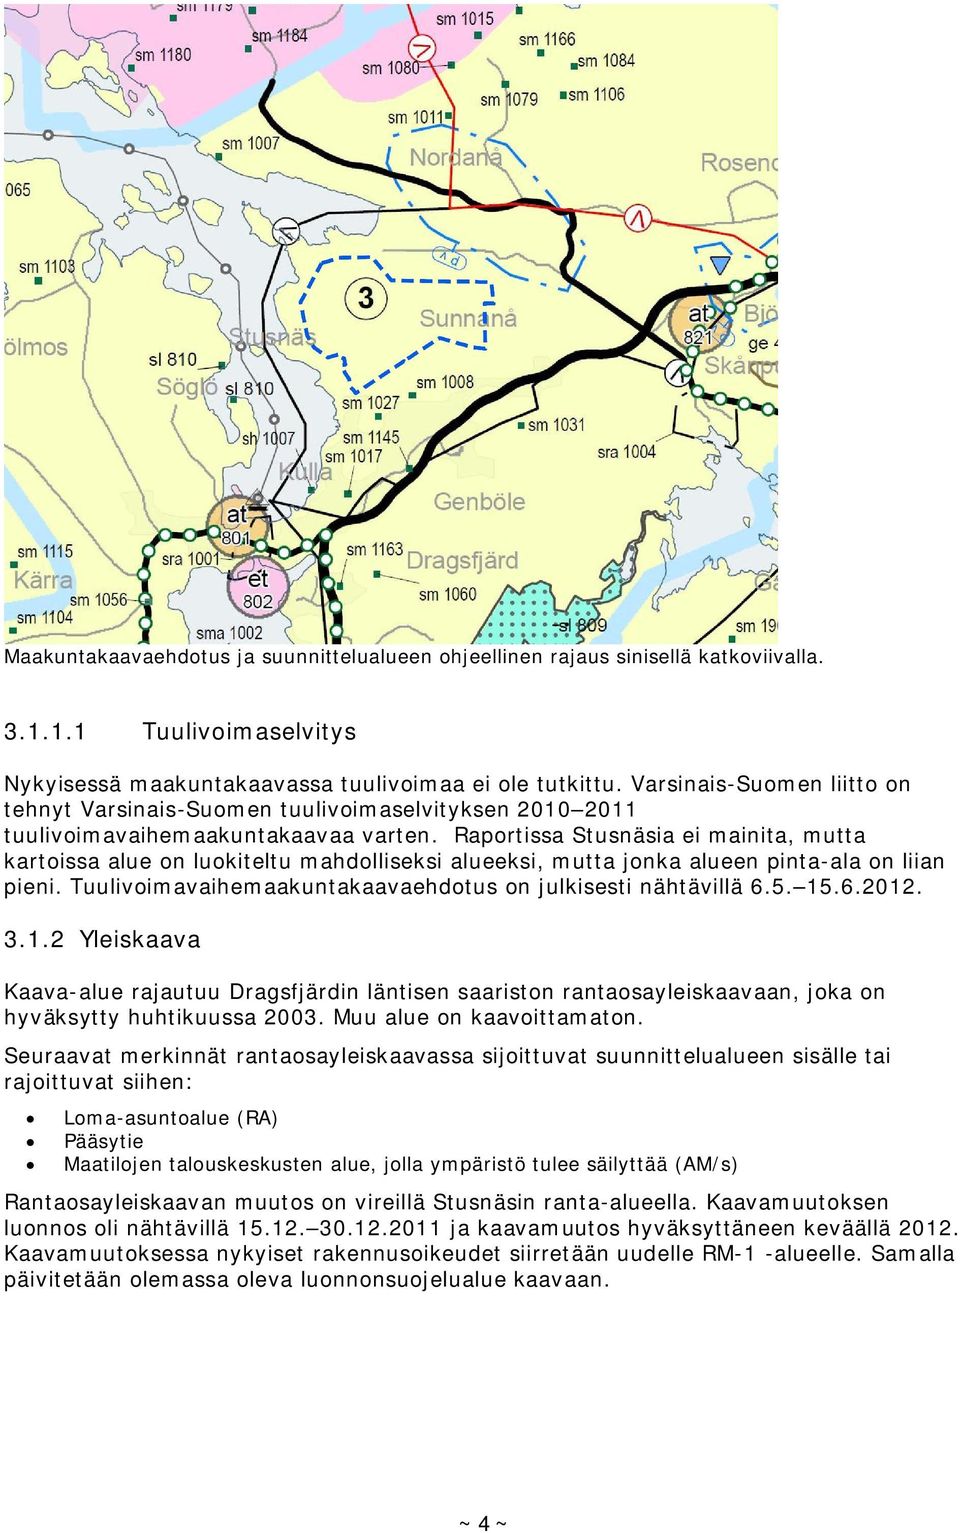 Raportissa Stusnäsia ei mainita, mutta kartoissa alue on luokiteltu mahdolliseksi alueeksi, mutta jonka alueen pinta-ala on liian pieni. Tuulivoimavaihemaakuntakaavaehdotus on julkisesti nähtävillä 6.